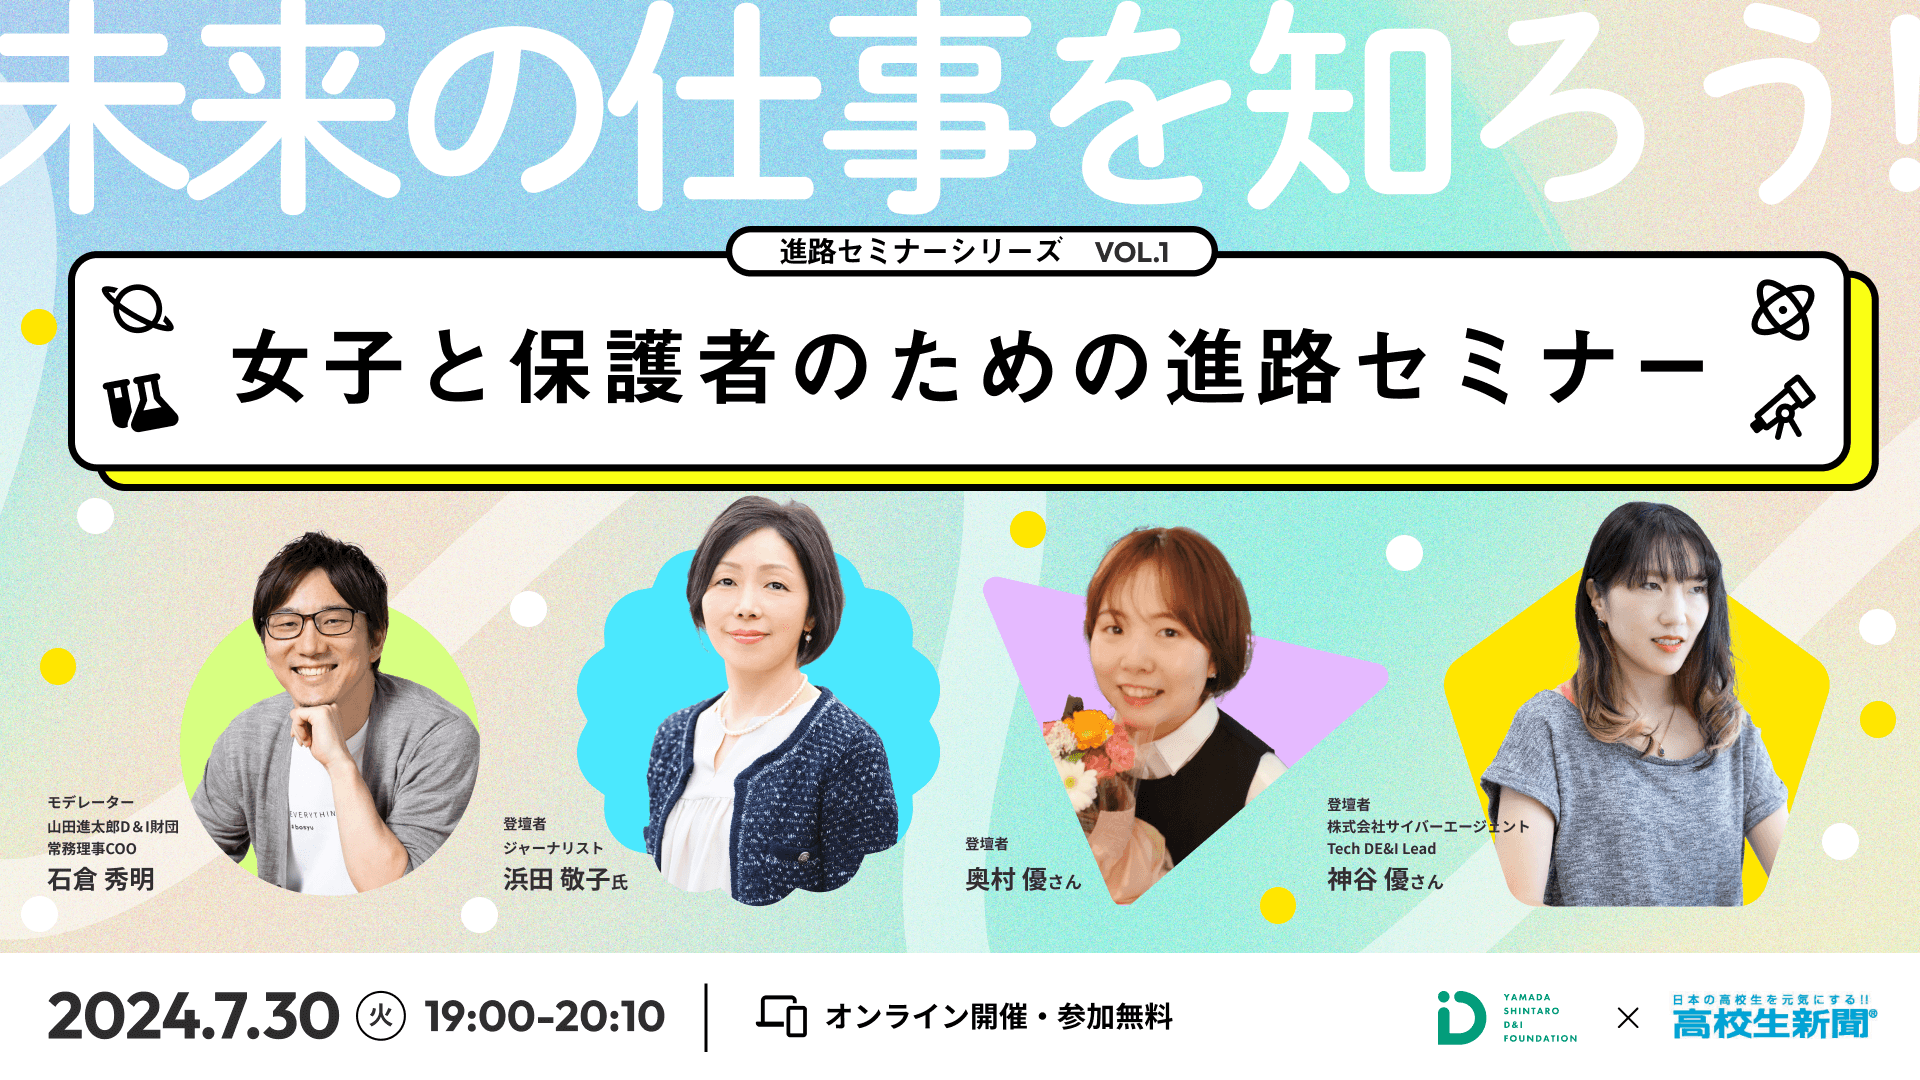 山田進太郎D&I財団と高校生新聞、共催イベント「未来の仕事を知ろう：女子と保護者のための進路セミナー」を開催